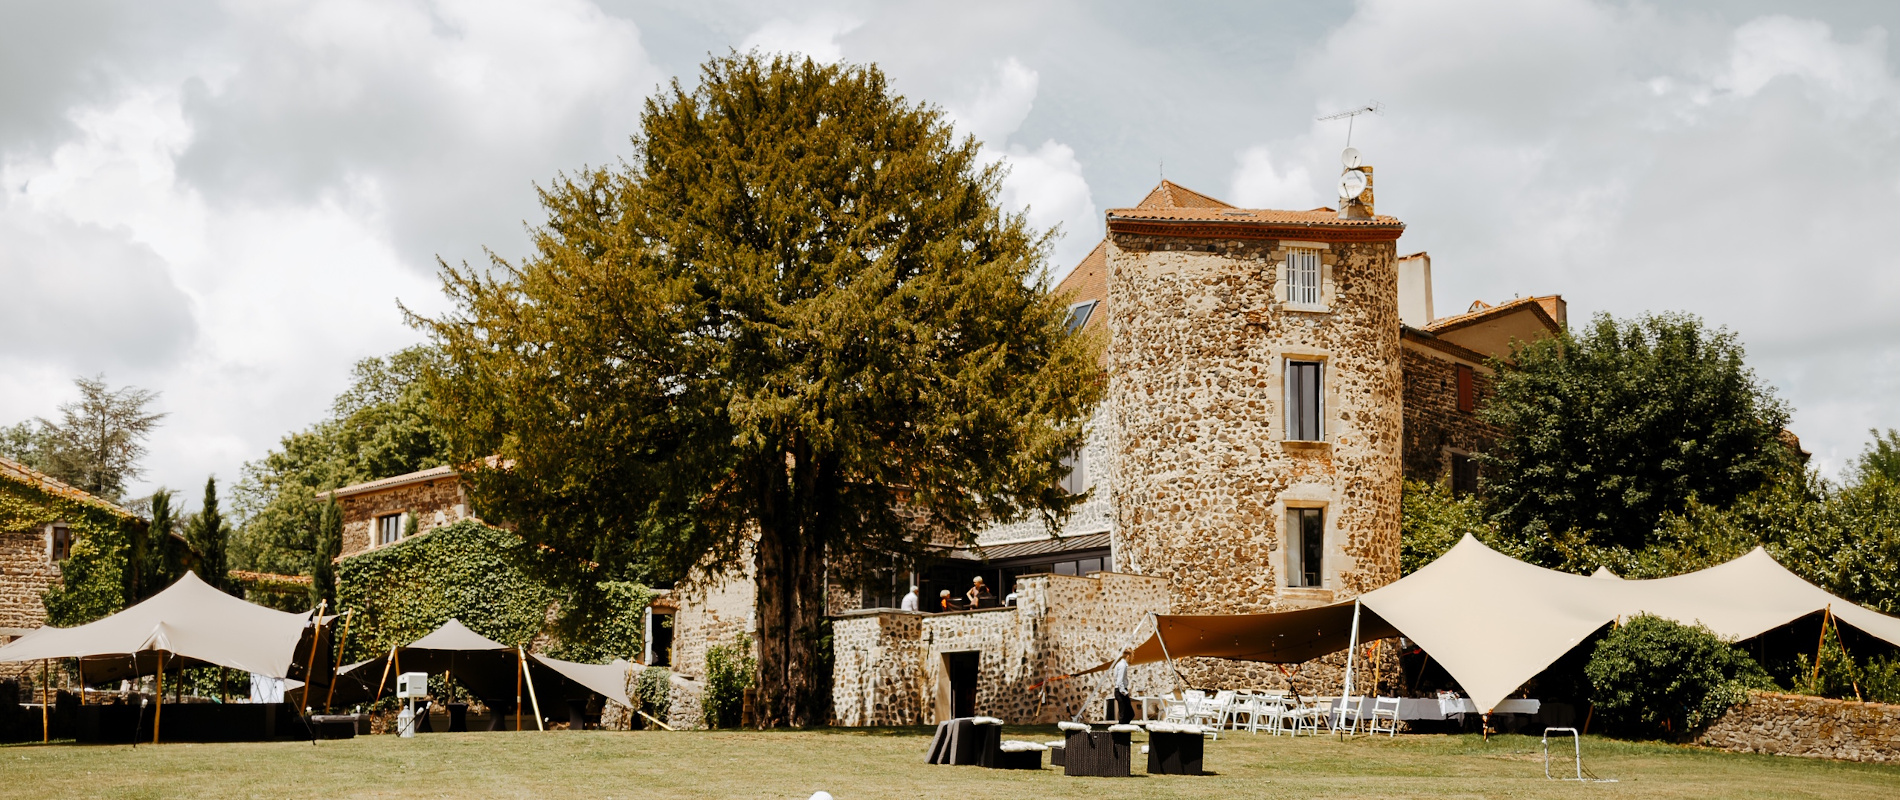 Photo des jardins du château mariage de Bois Rigaud en Auvergne.